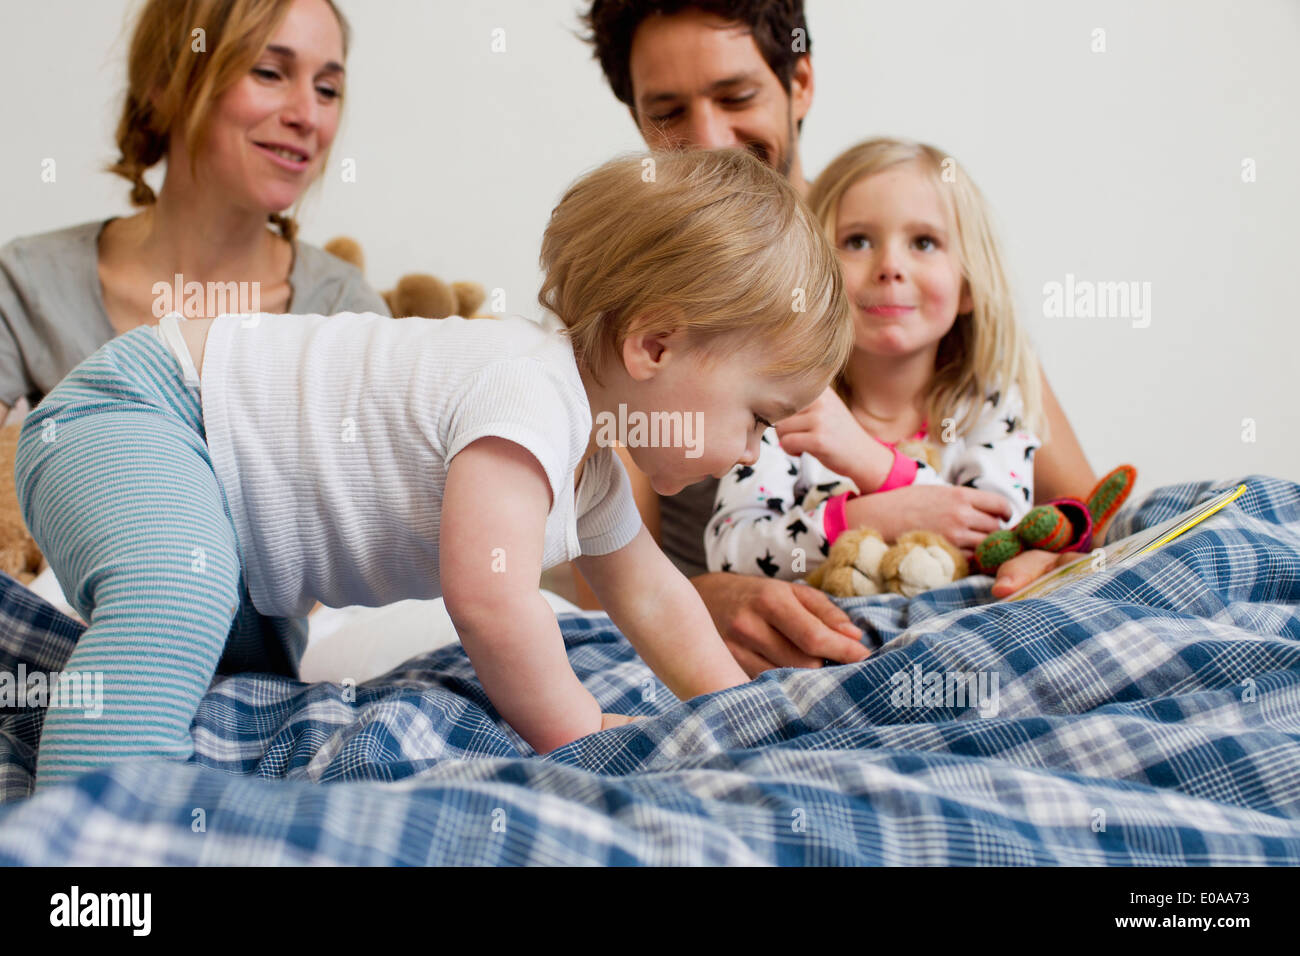 Bebé de Un año de edad chica arrastrándose en la cama de los padres. Foto de stock